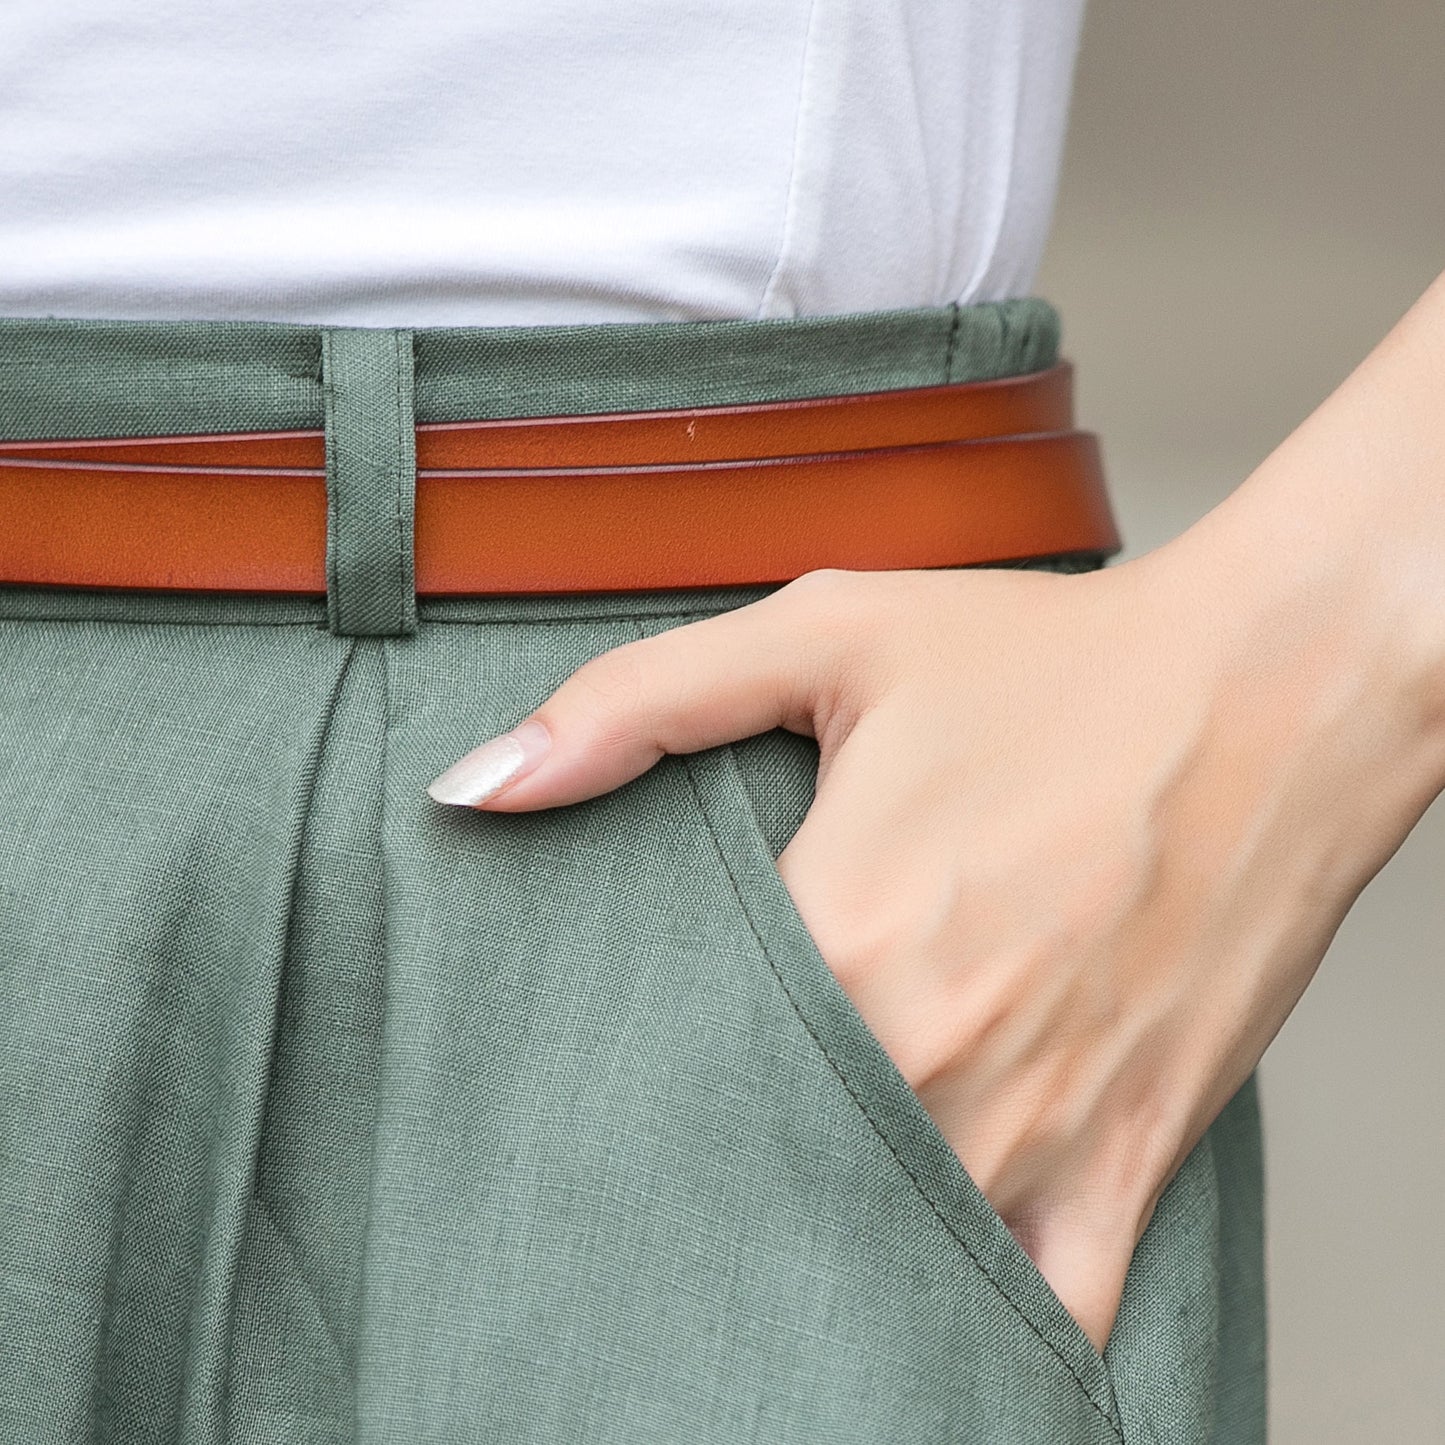 Elegant Green Button-Down Midi Skirt for Women #3697